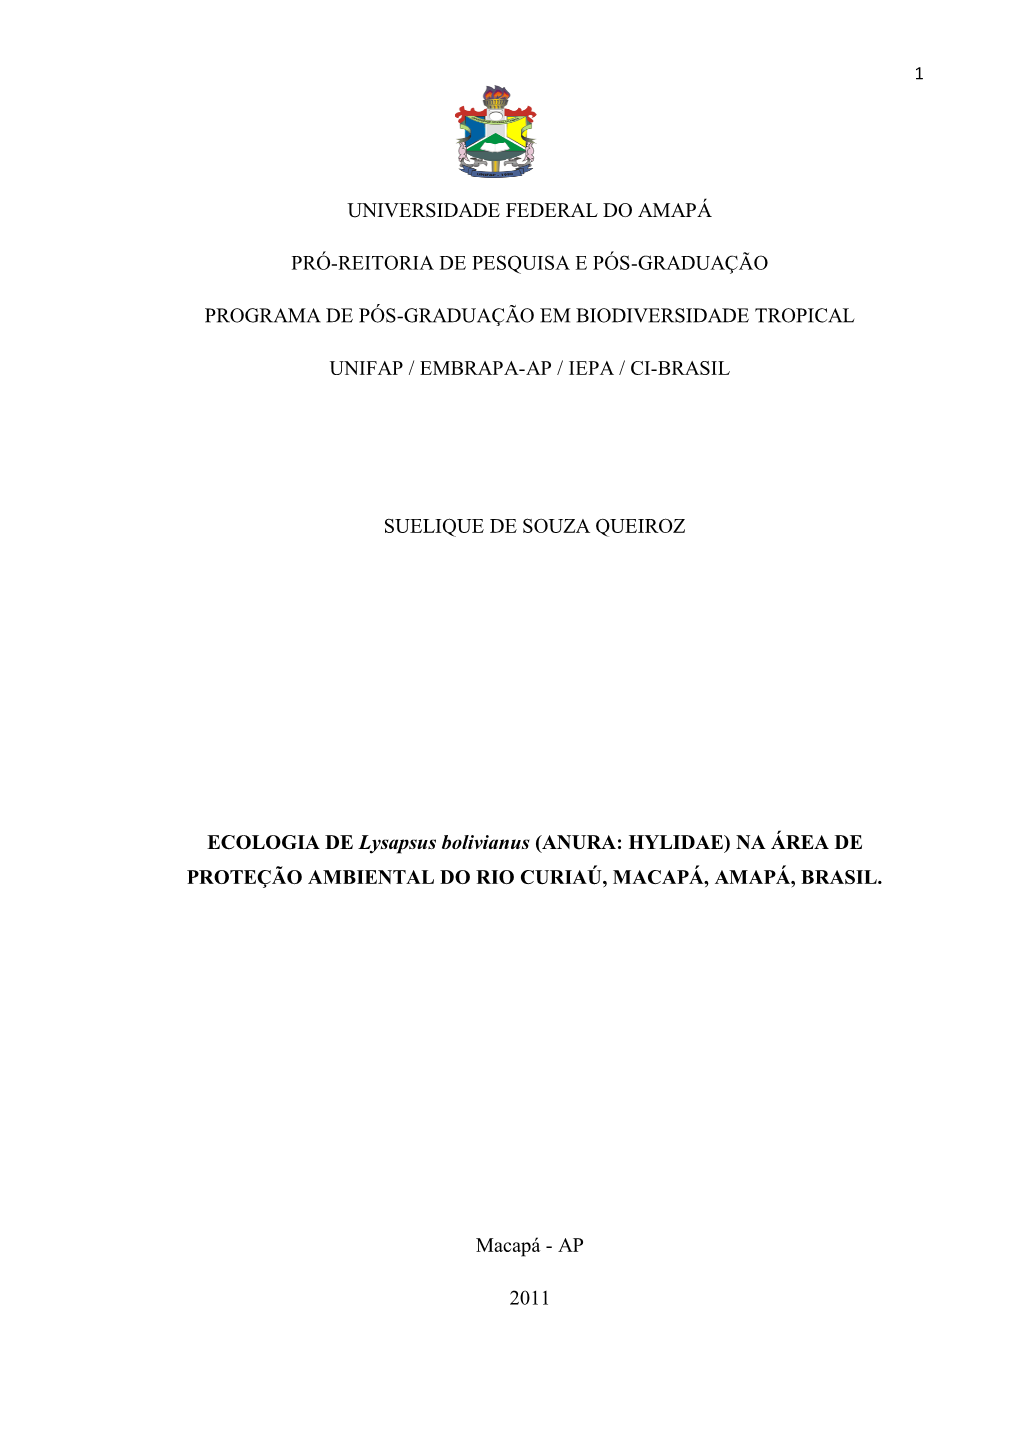 ECOLOGIA DE Lysapsus Bolivianus (ANURA: HYLIDAE) NA ÁREA DE PROTEÇÃO AMBIENTAL DO RIO CURIAÚ, MACAPÁ, AMAPÁ, BRASIL